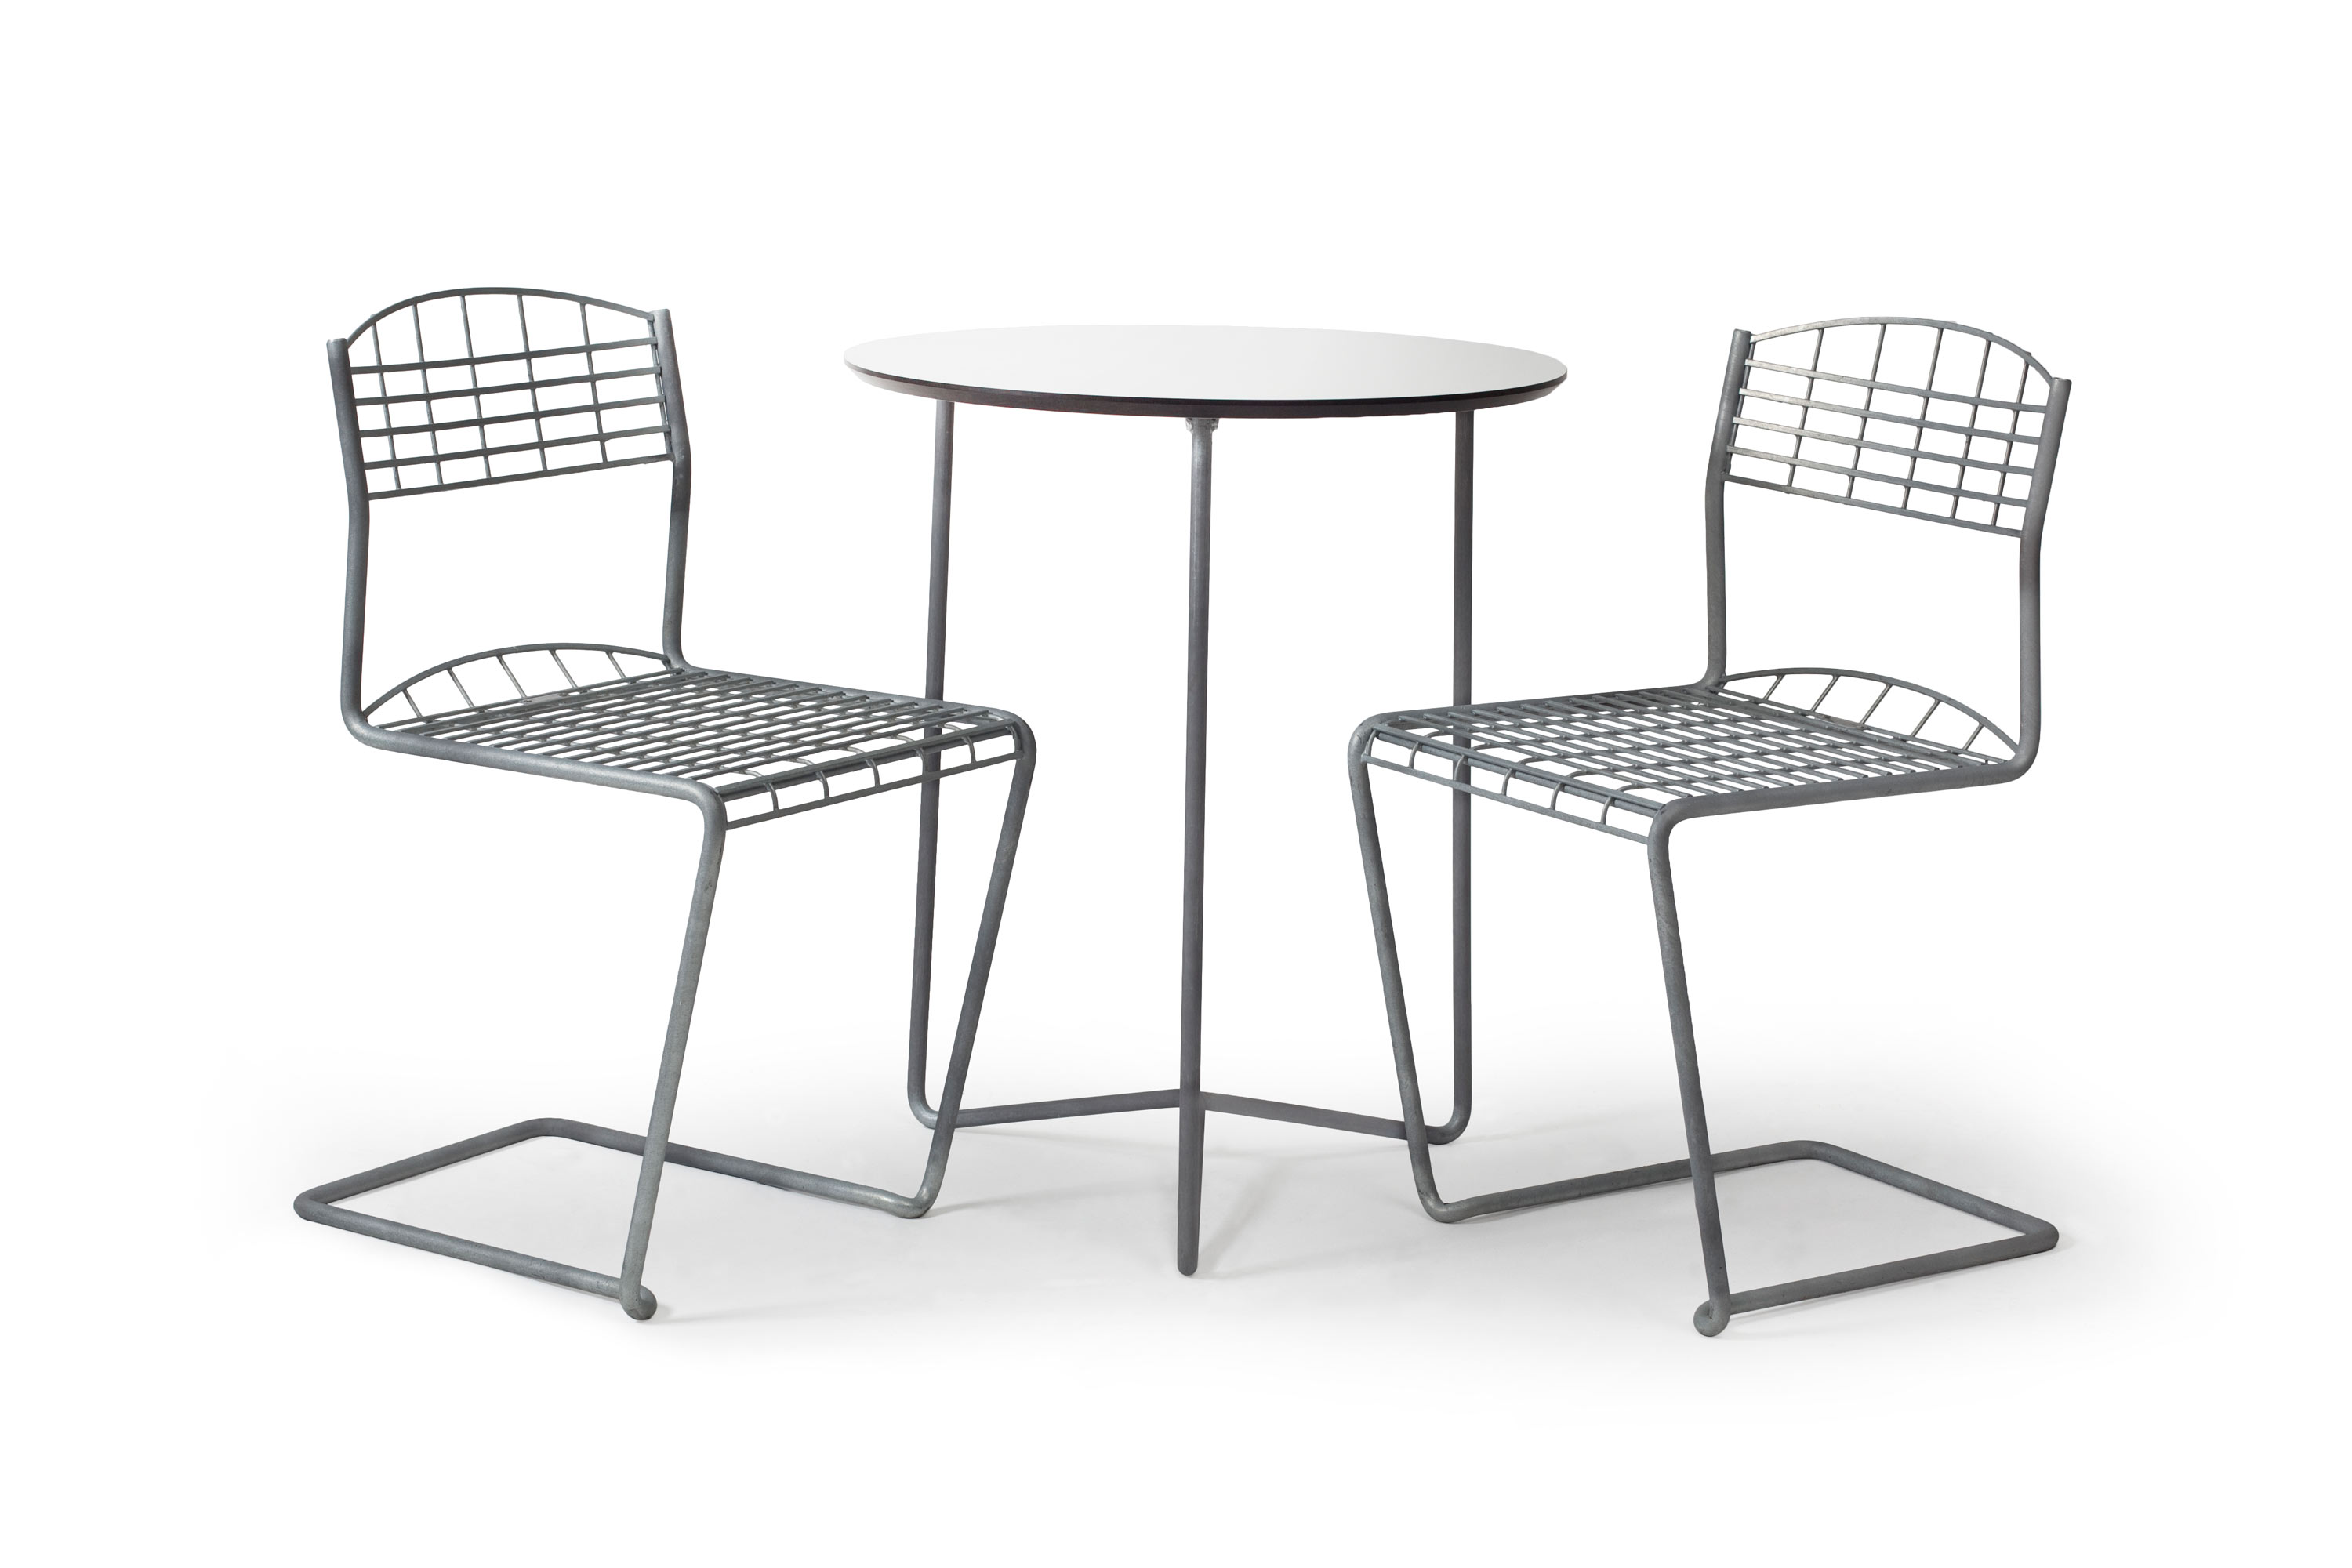 Grythyttan Stålmöbler High-tech kafésett Galvanisert stål 2 stoler & bord 60 cm